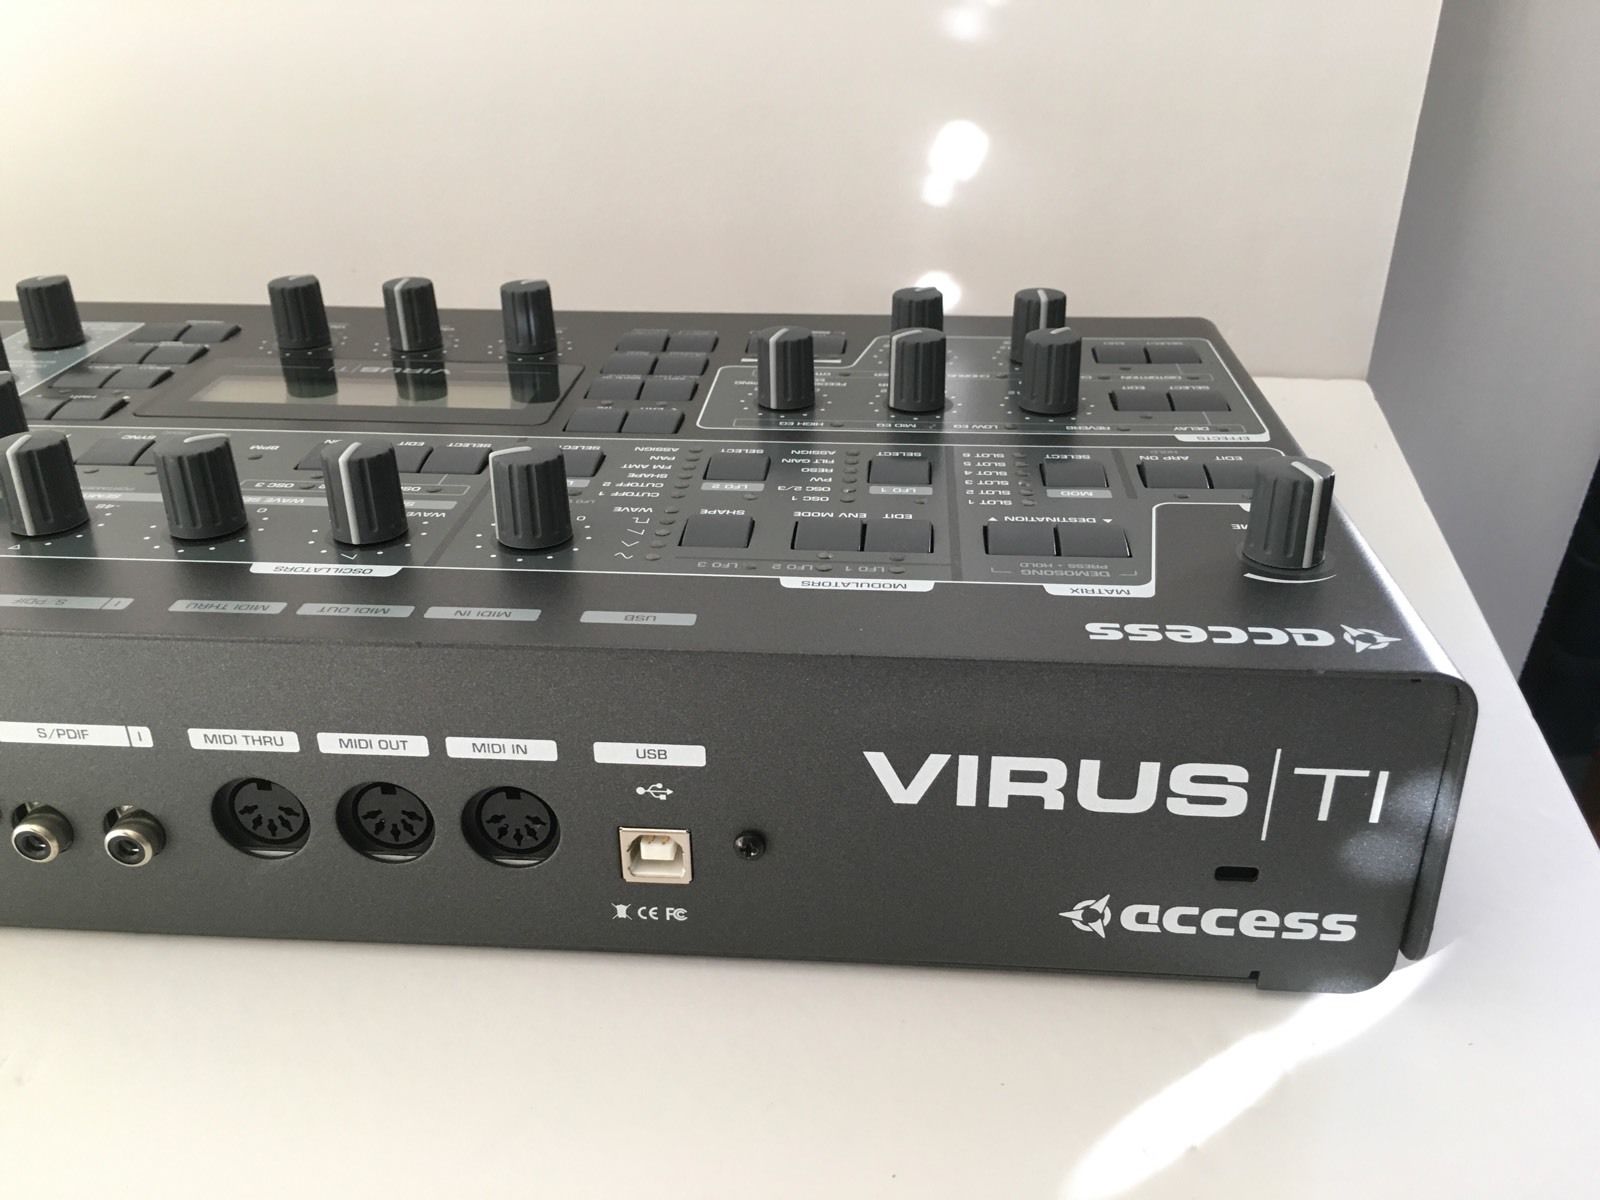 Virus ti. Access virus ti2 desktop. Access virus ti2 Keyboard. Access virus ti2 Polar. Virus ti Synthesizer.